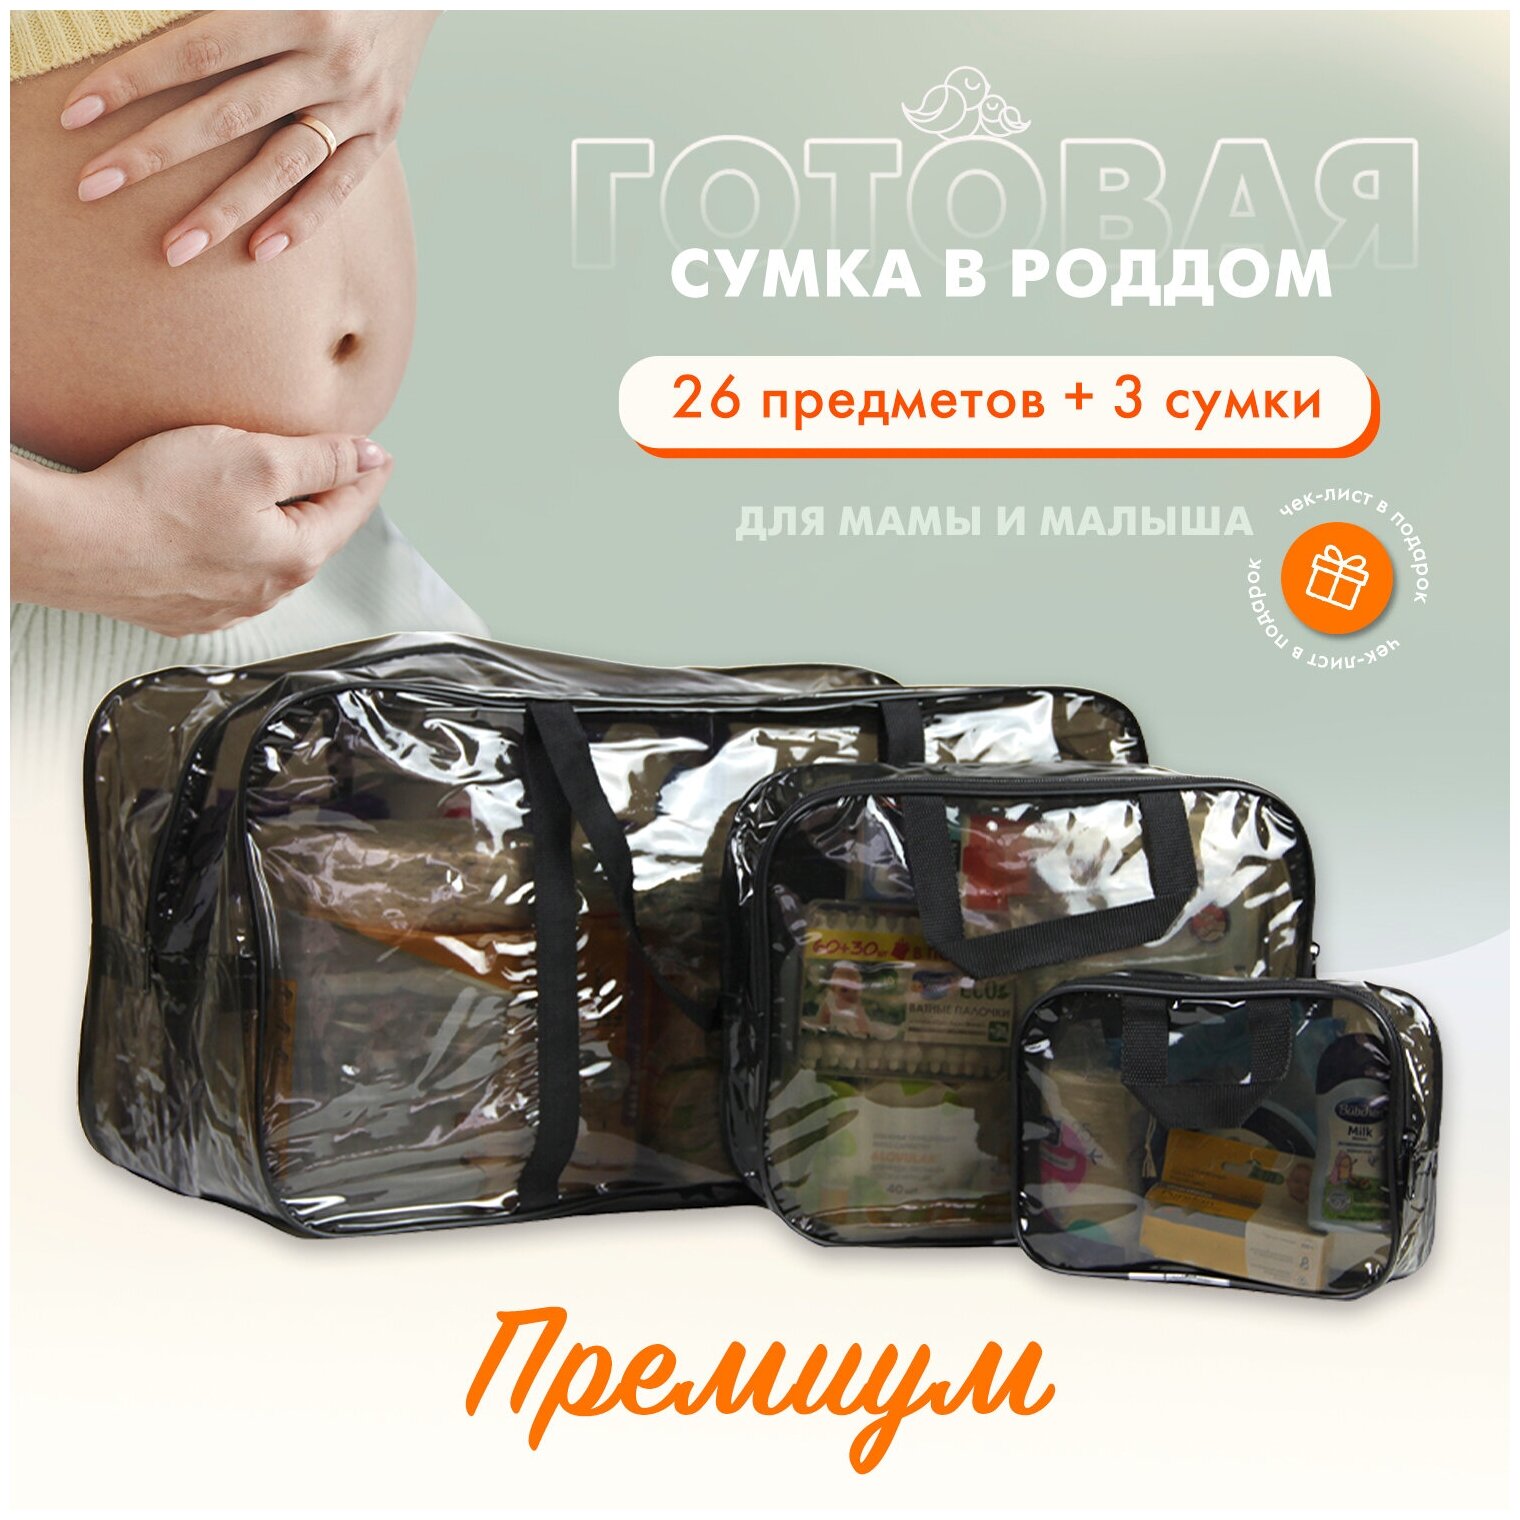 Сумка в роддом для мамы и малыша готовая с наполнением, 26 предметов + 3 сумки, комплектация "Премиум", черная